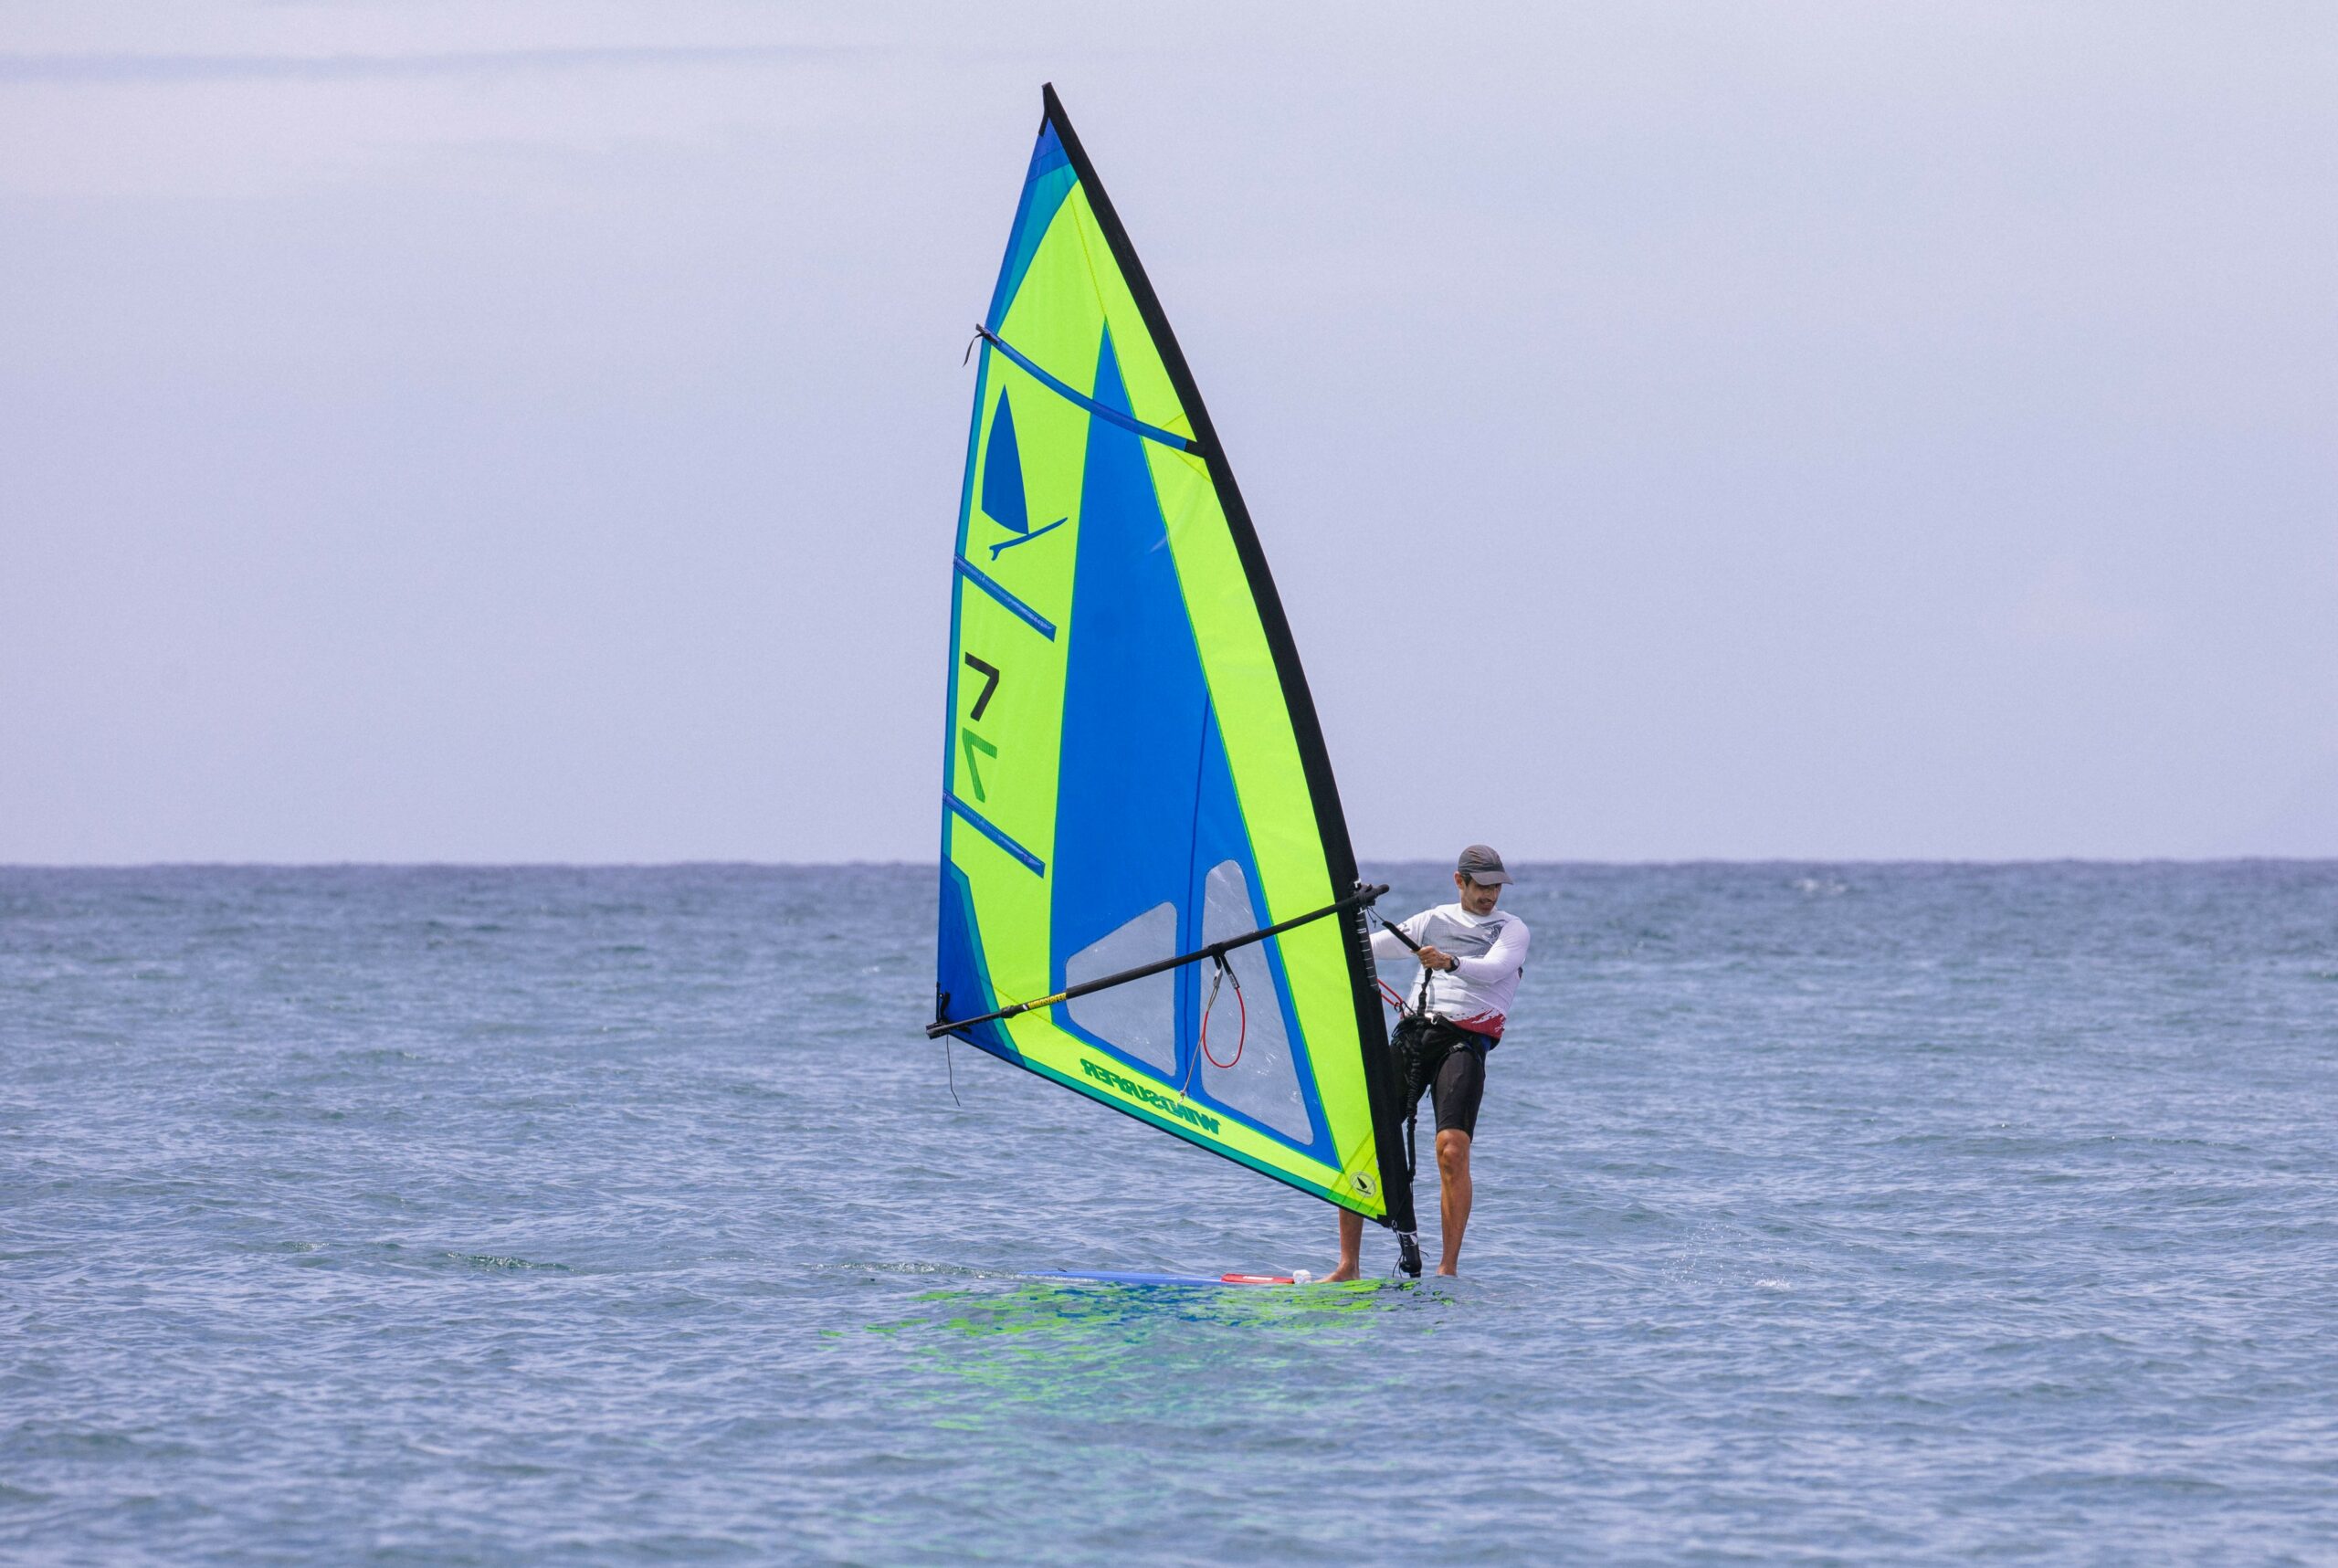 A man windsurfing